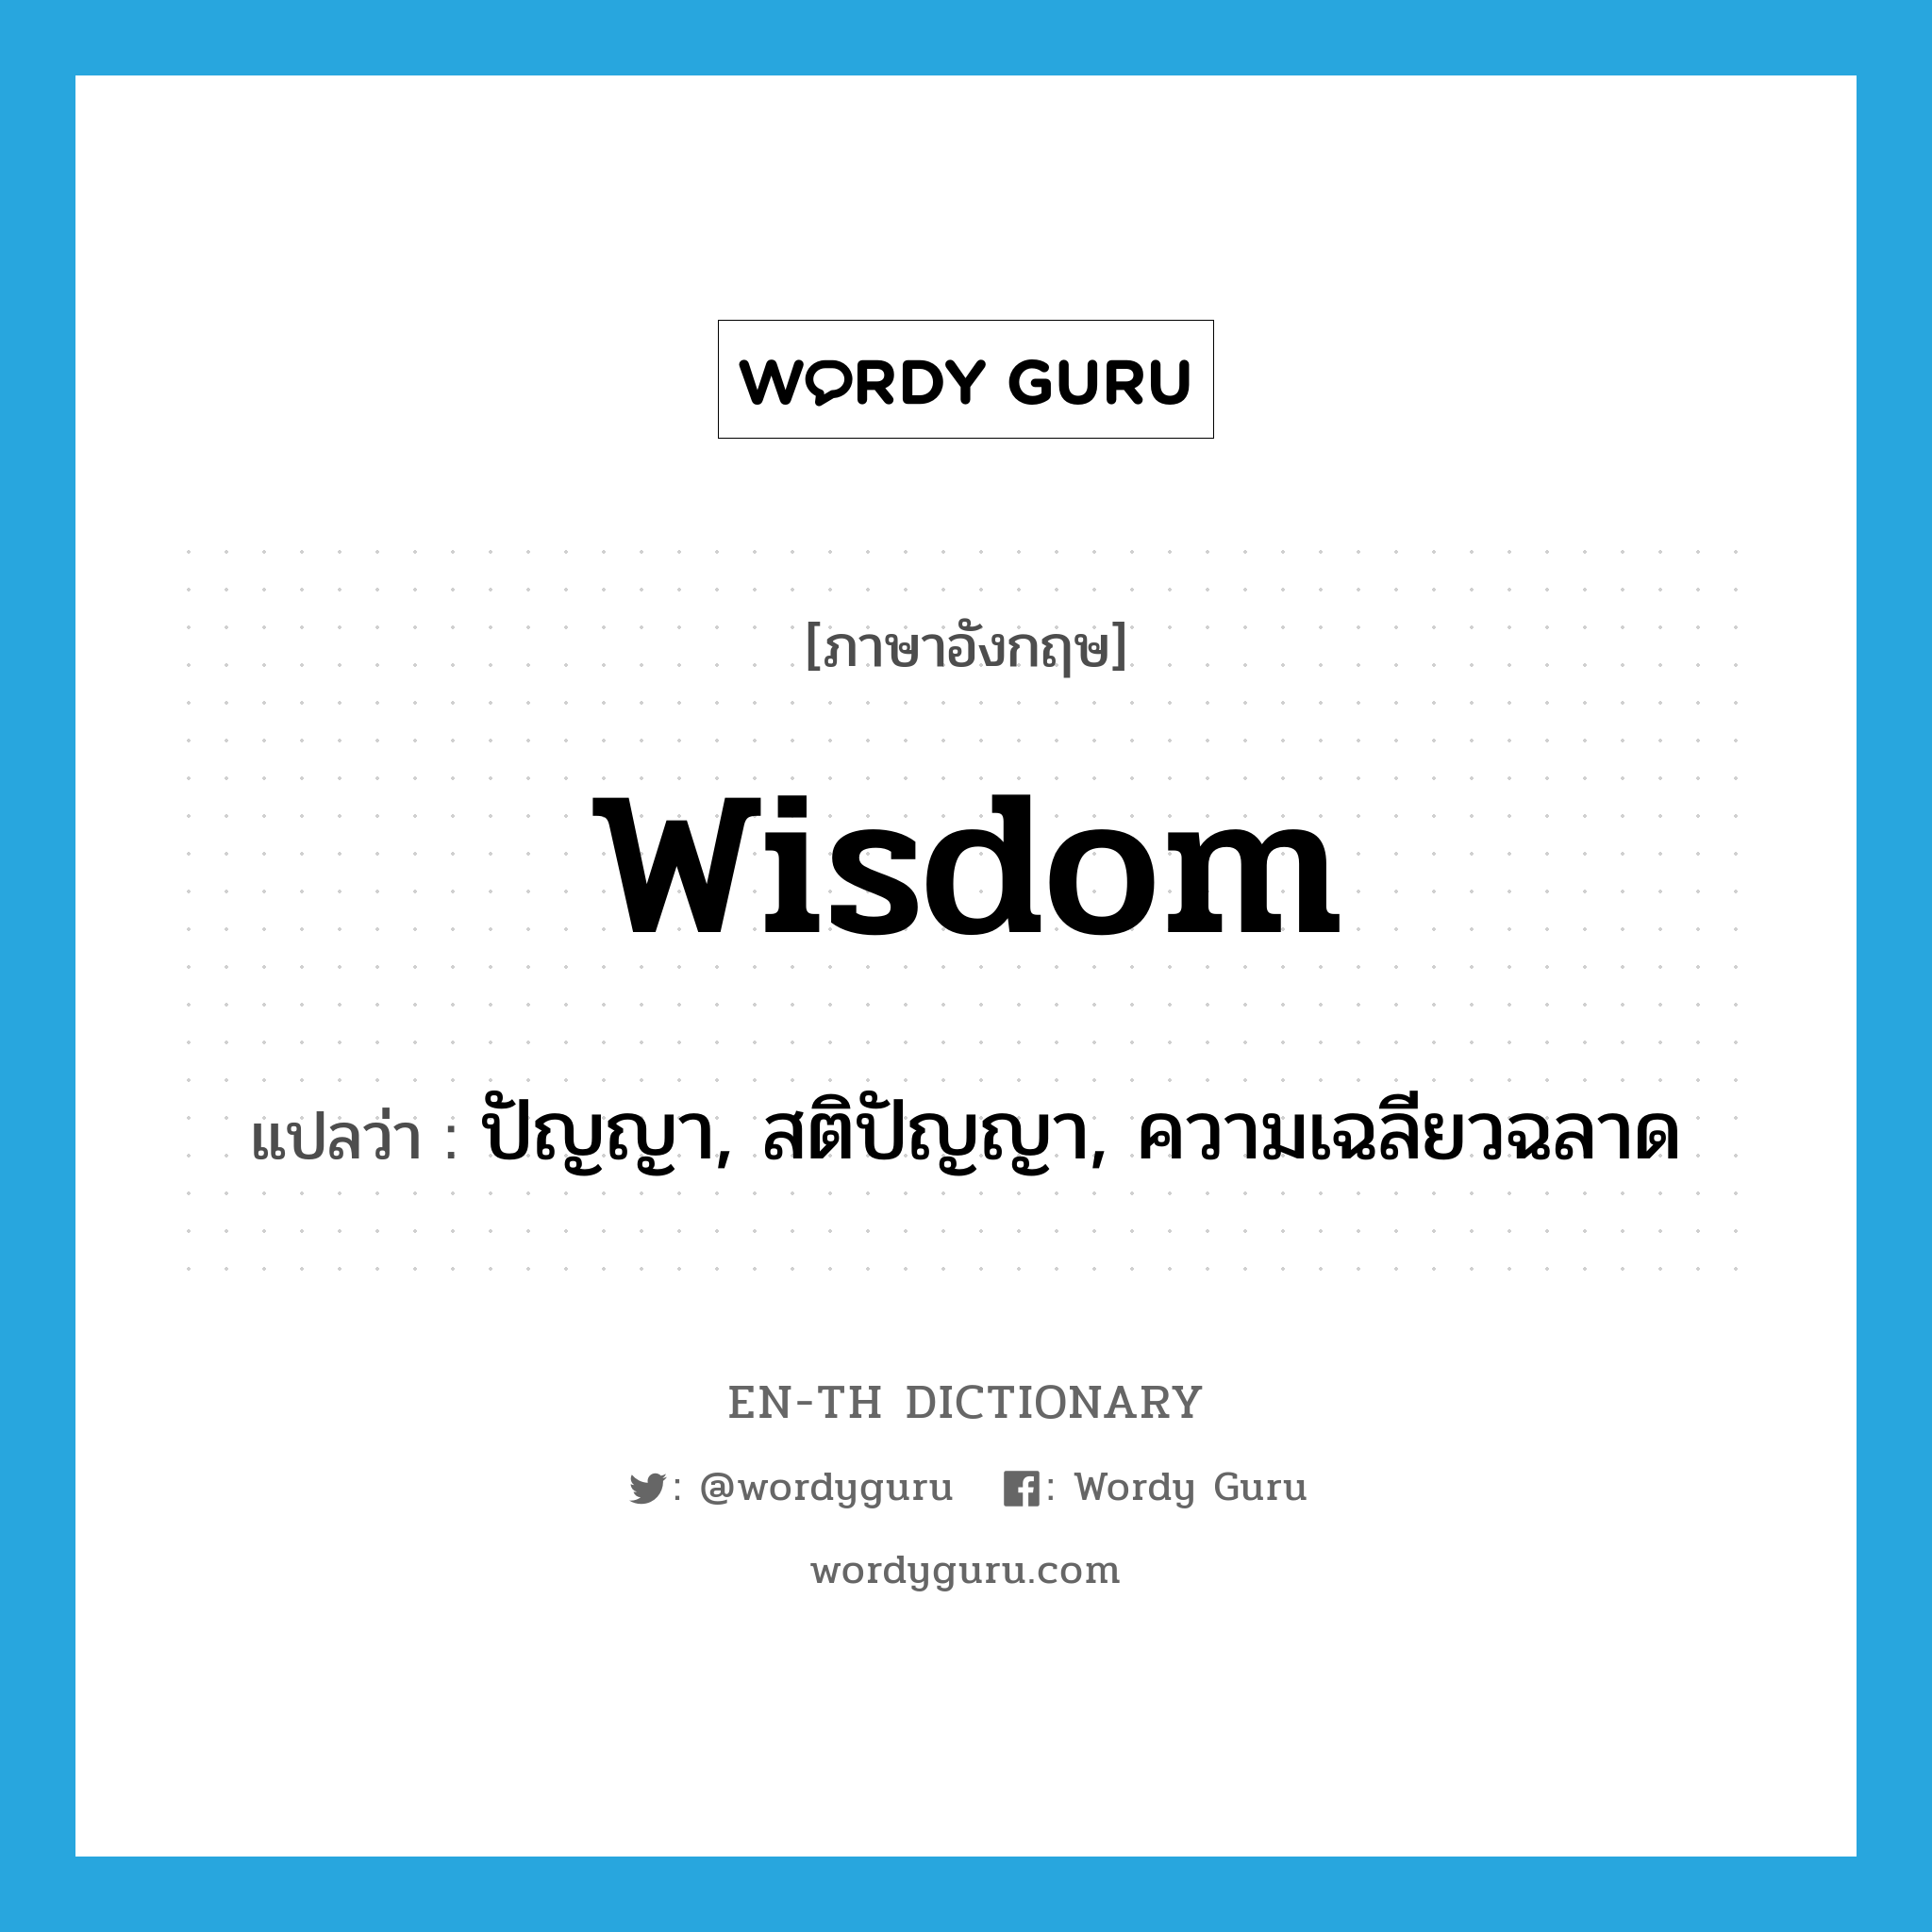 wisdom แปลว่า?, คำศัพท์ภาษาอังกฤษ wisdom แปลว่า ปัญญา, สติปัญญา, ความเฉลียวฉลาด ประเภท N หมวด N